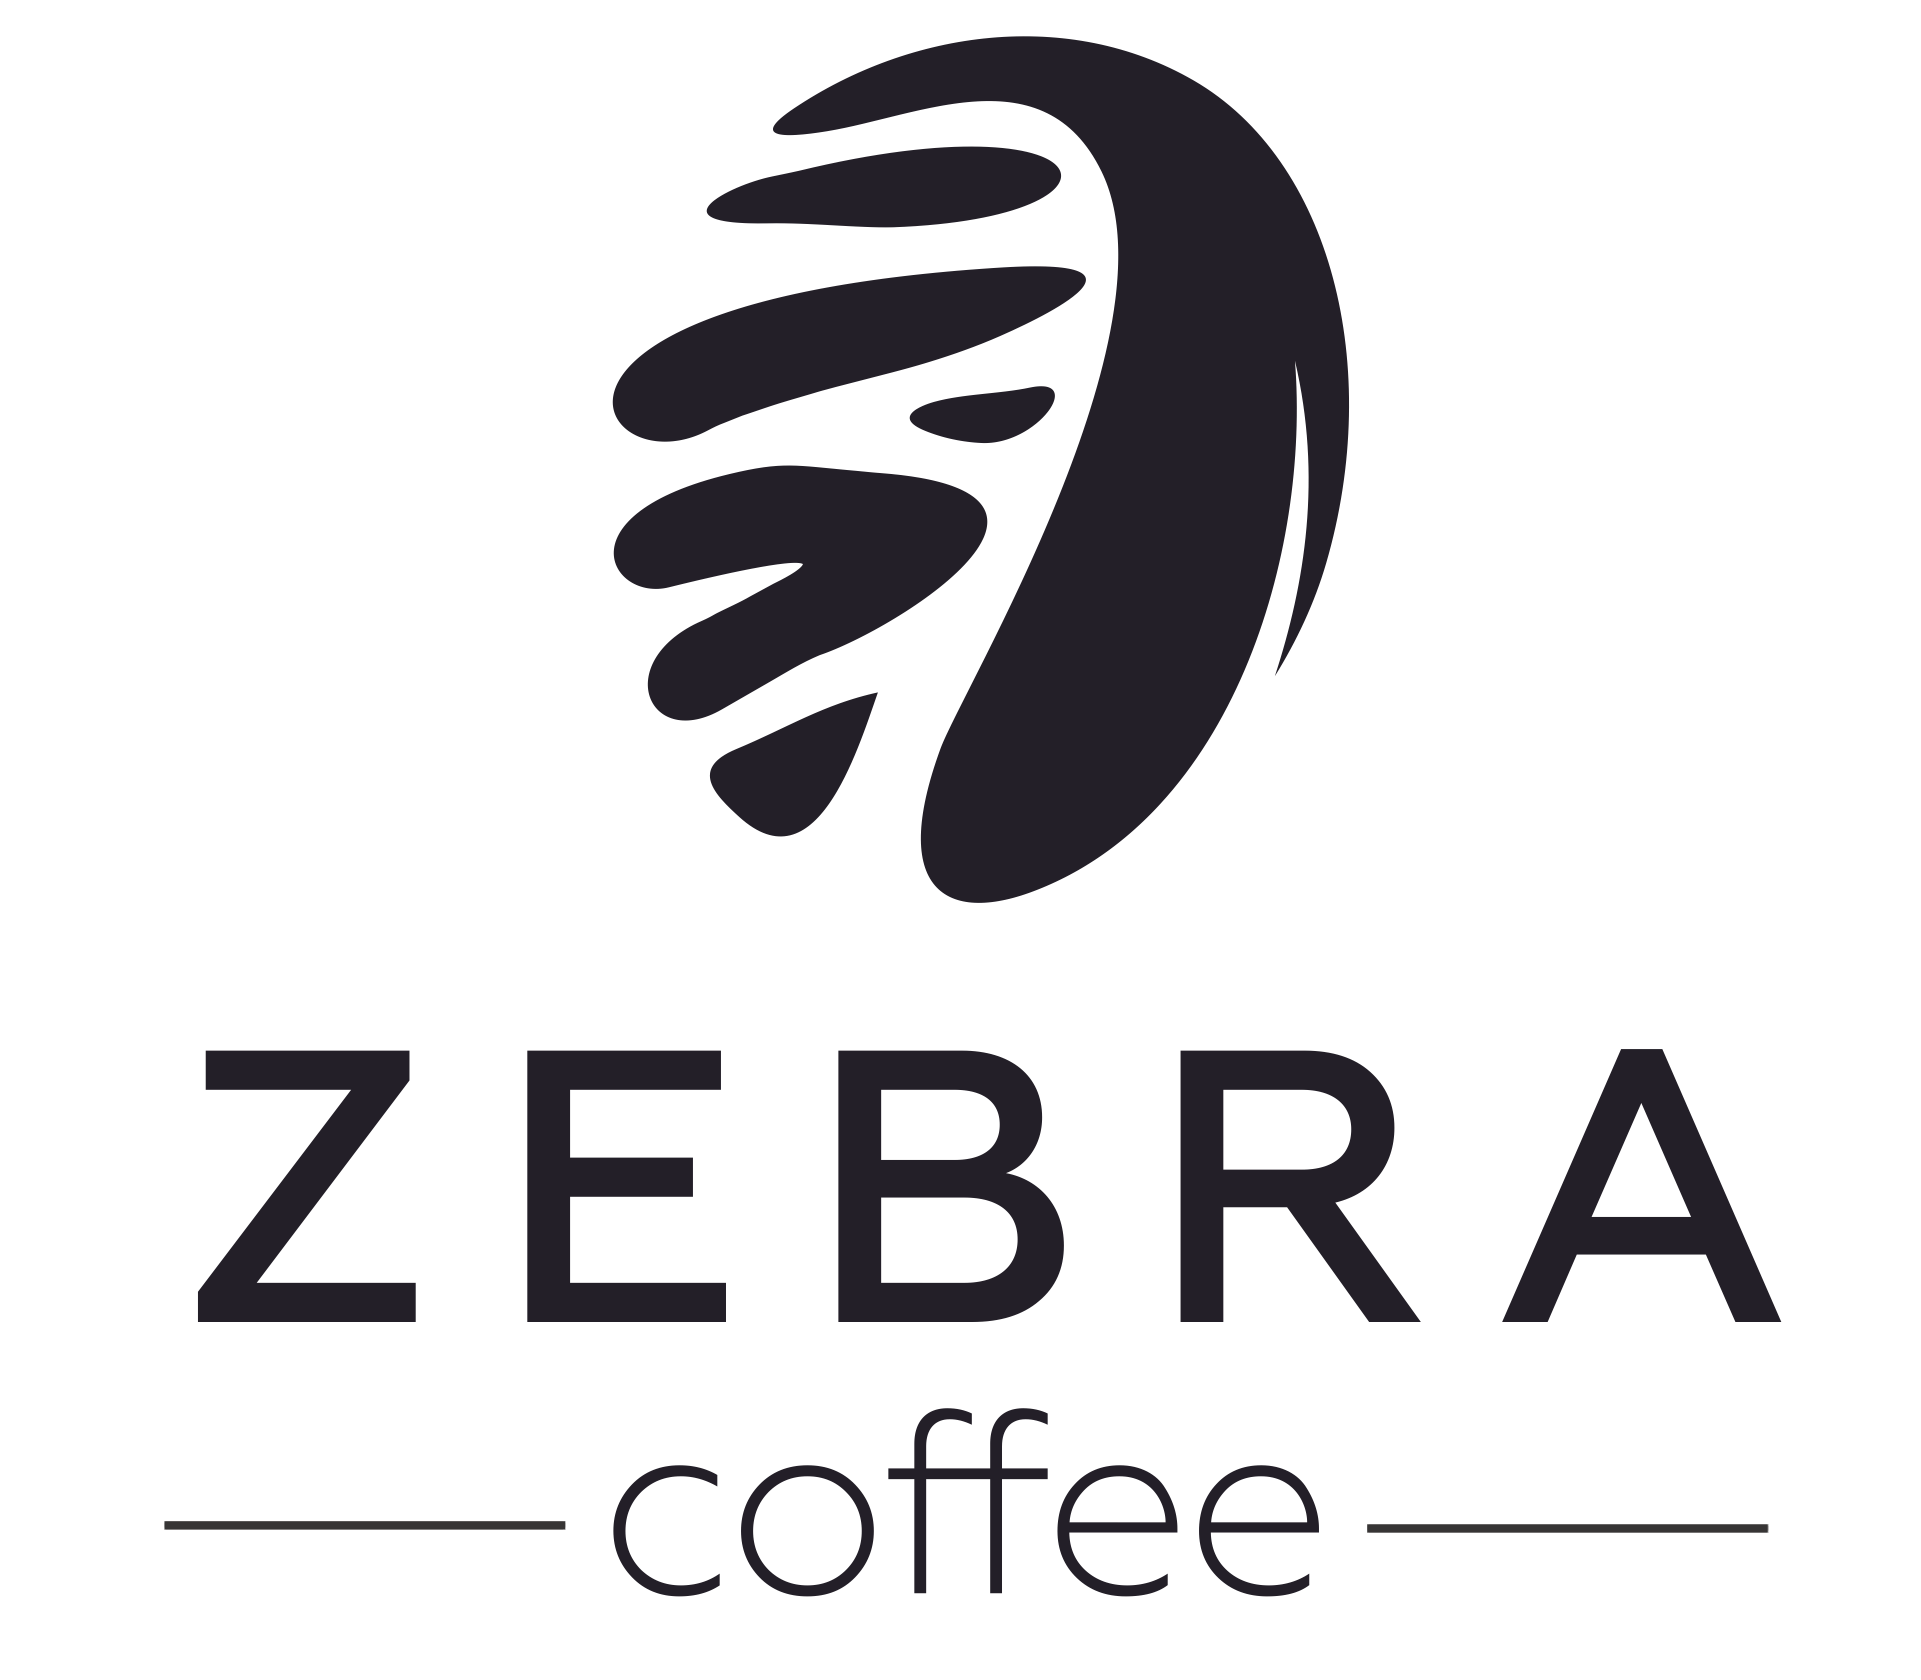 zebracoffee.kz